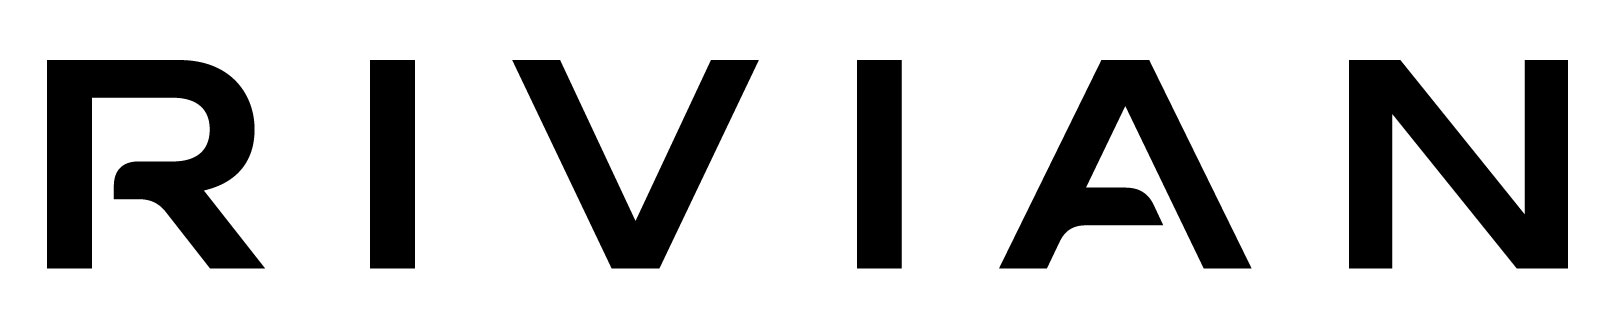 Rivian logo.jpg